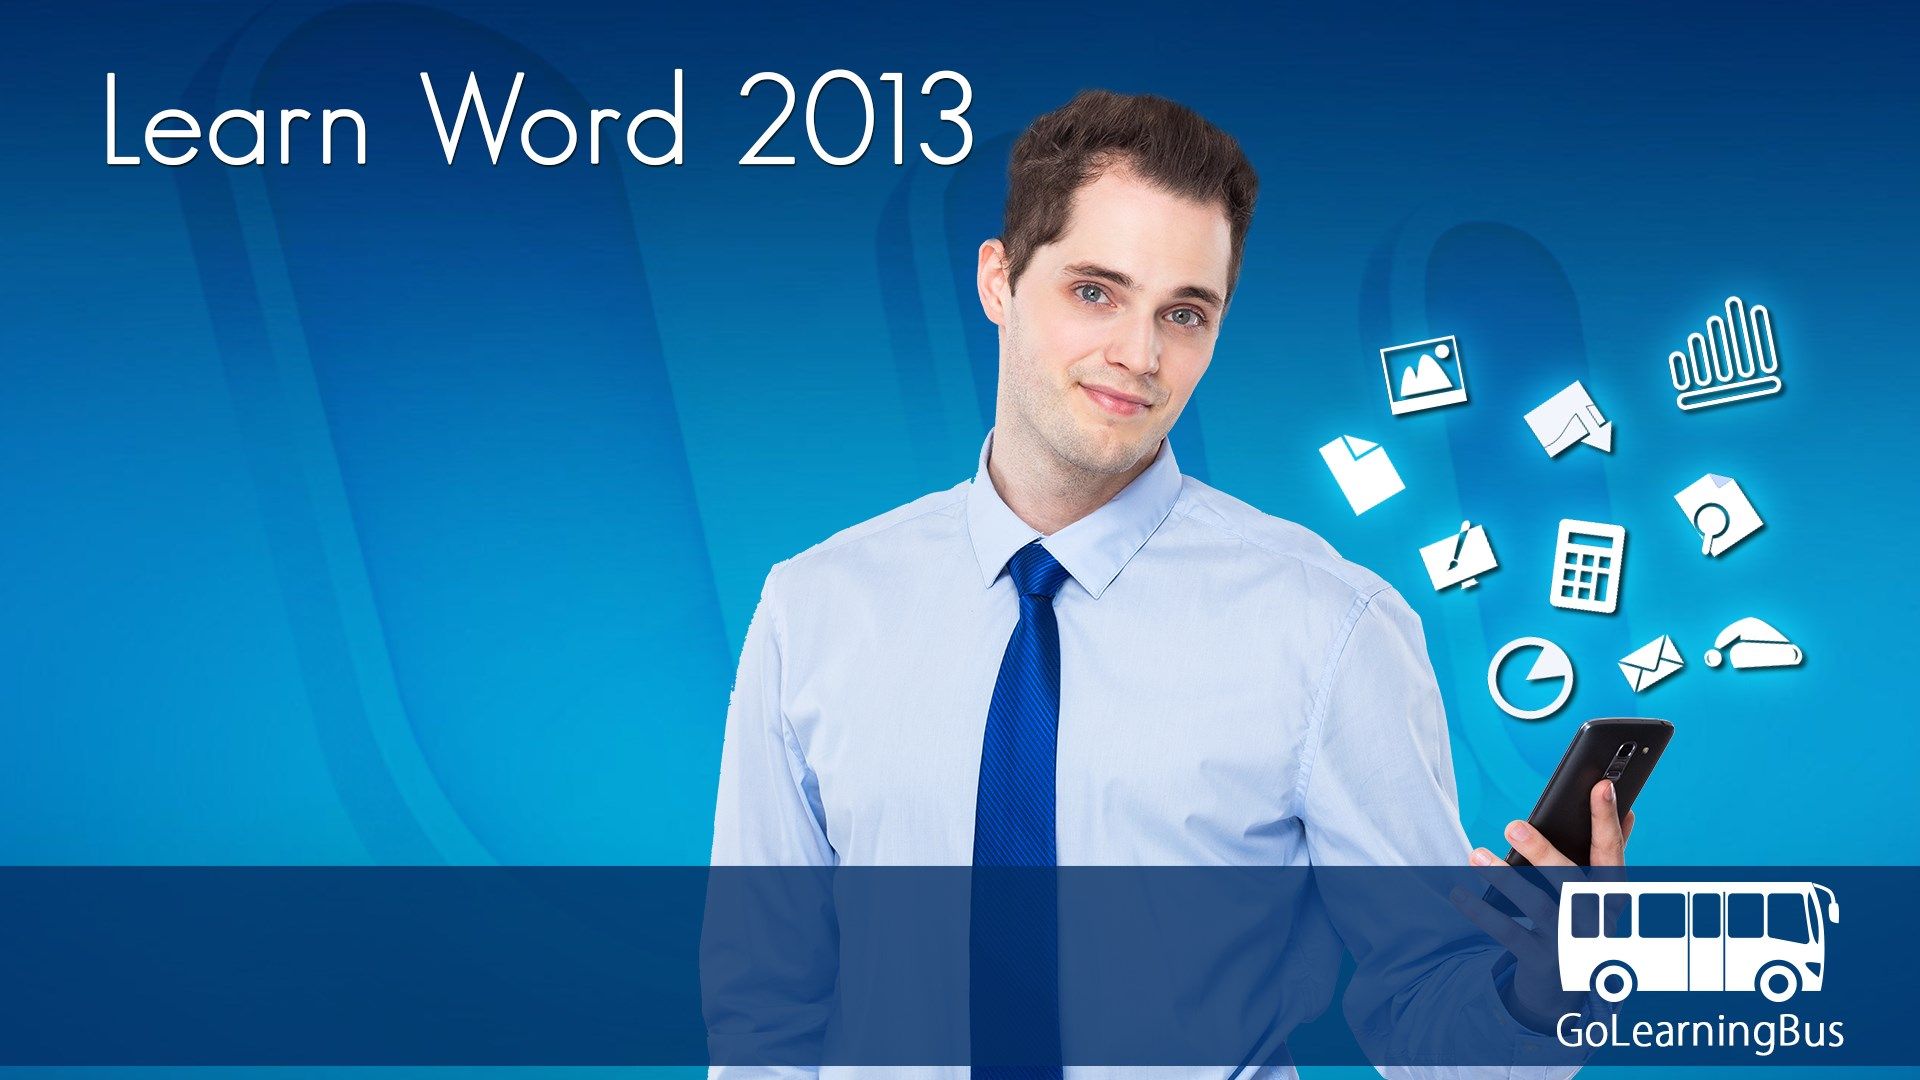 Learn Word 2013 by WAGmob